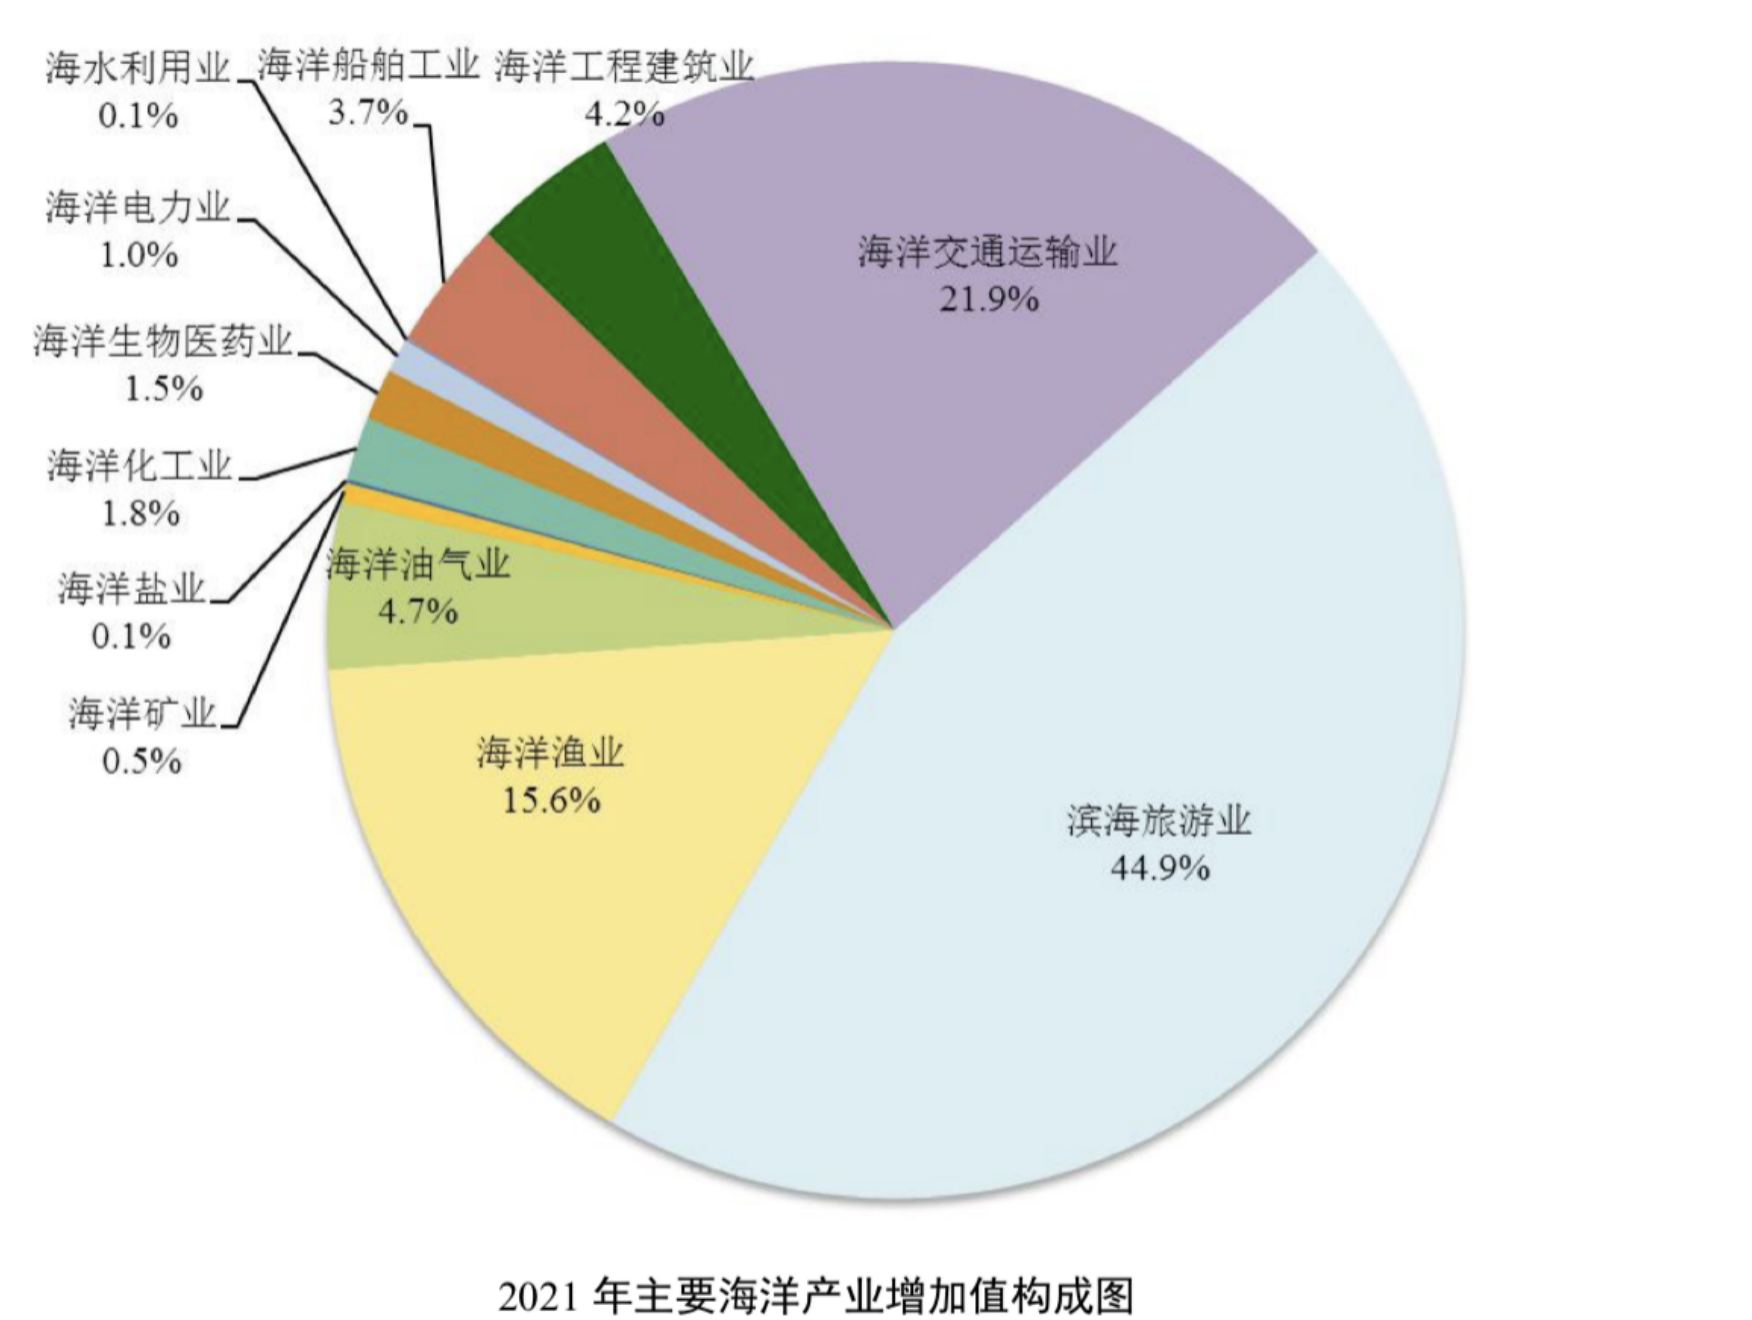 来源：2021 年中国海洋经济统计公报